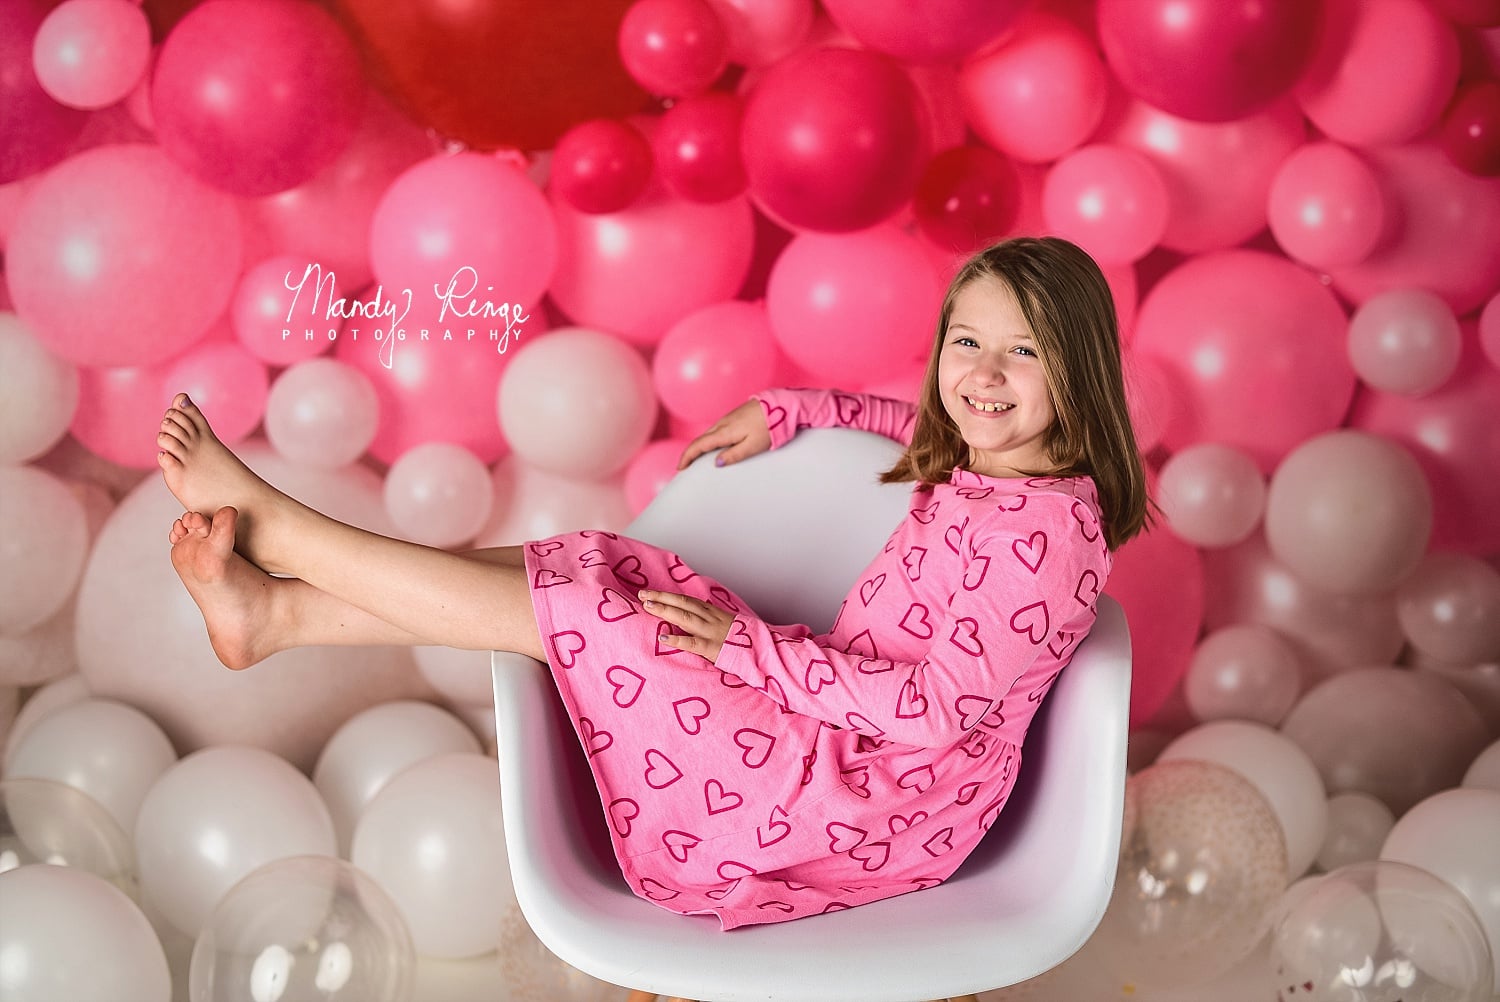 Kate Mur de ballons Rose Rouge Saint-Valentin Toile de fond conçue par Mandy Ringe Photographie